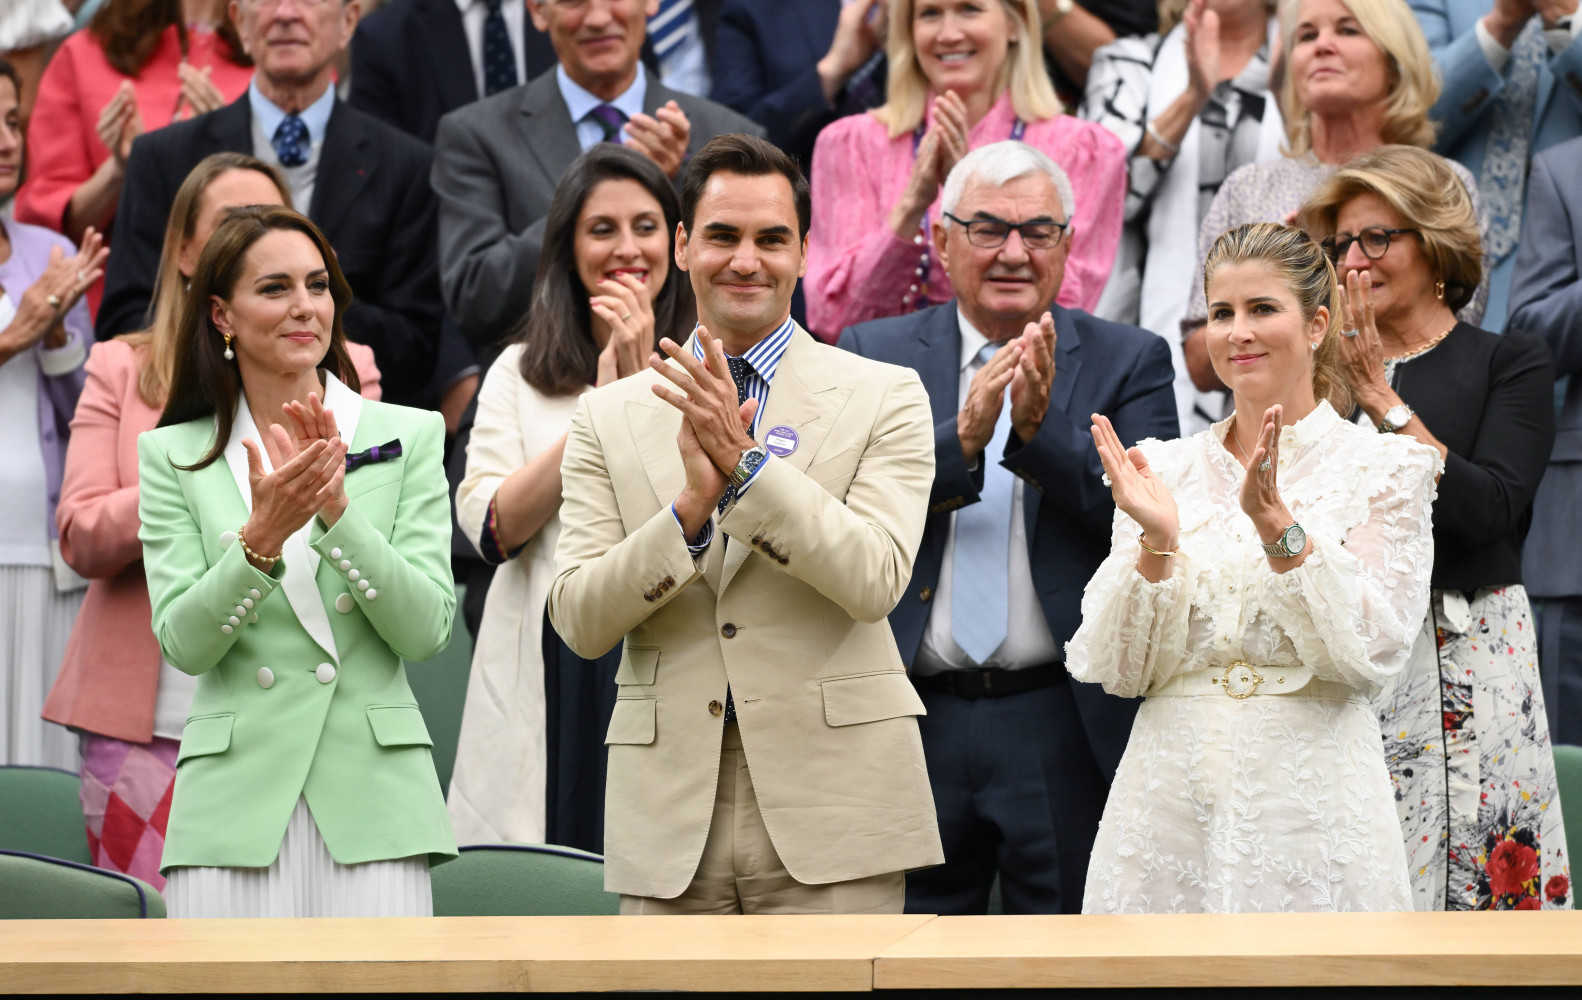 Kate Middleton’ın Wimbledon tarzı